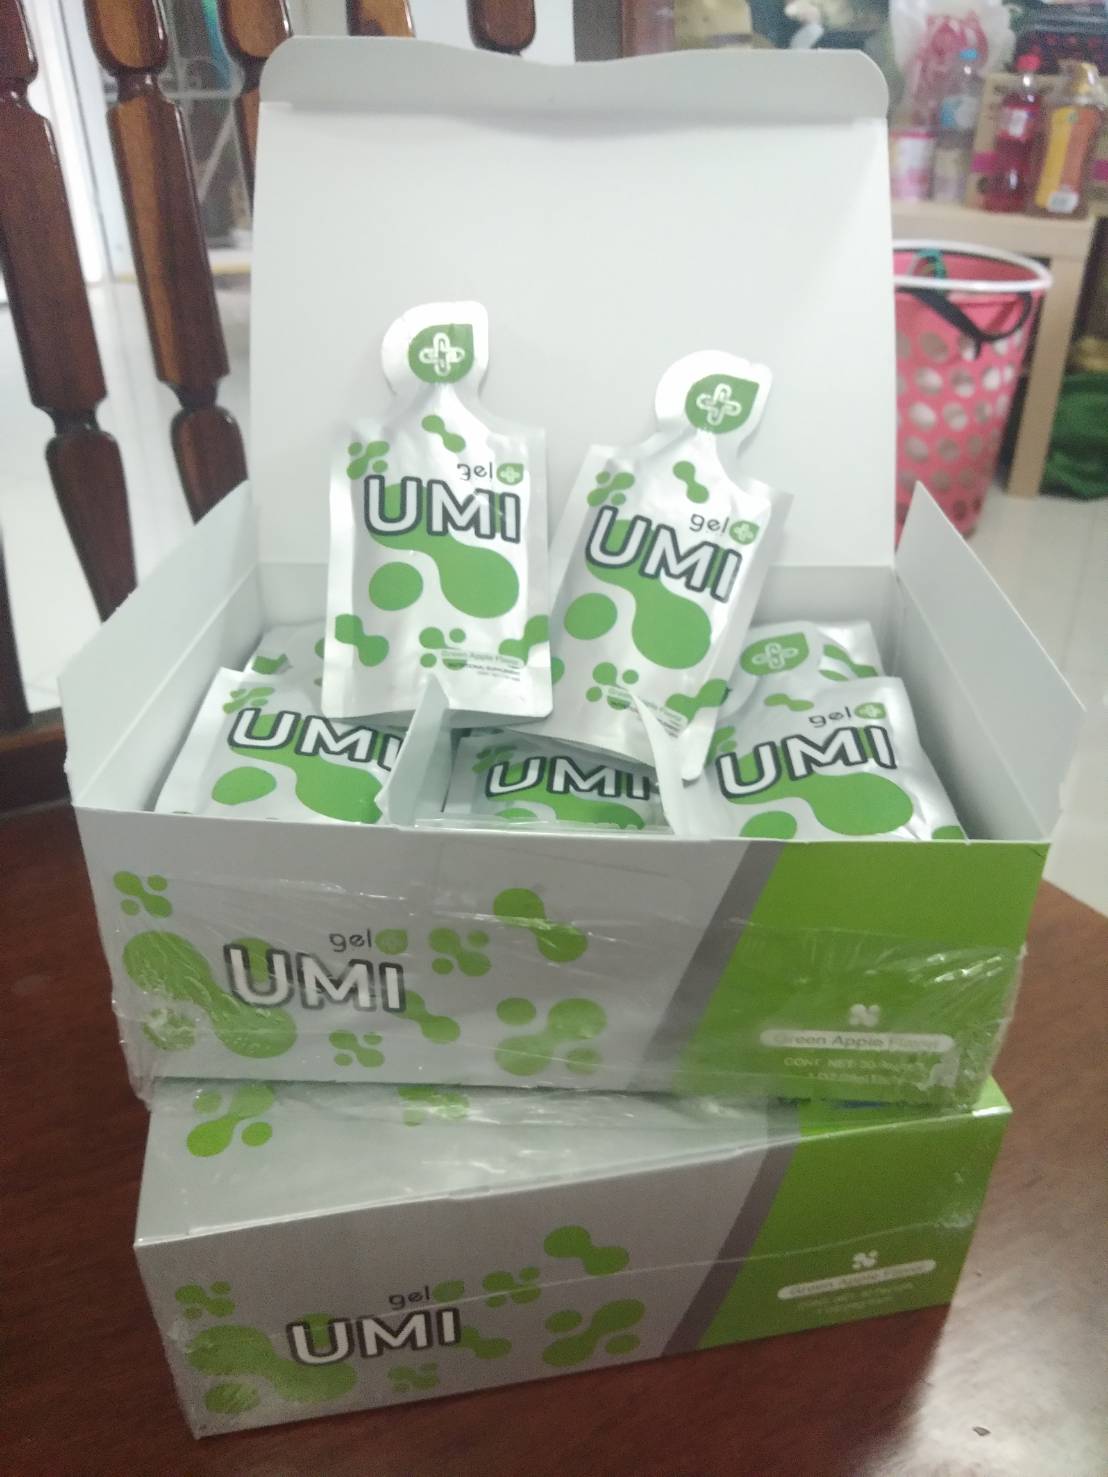 Agel Umi เอเจล ยูมิ  แองเจิล ยูมิ Umi Gel Plus อาหารเสริมเยลลี่ ฟูคอยแดน (Fucoidan) บำรุงไต (สีเขียว)